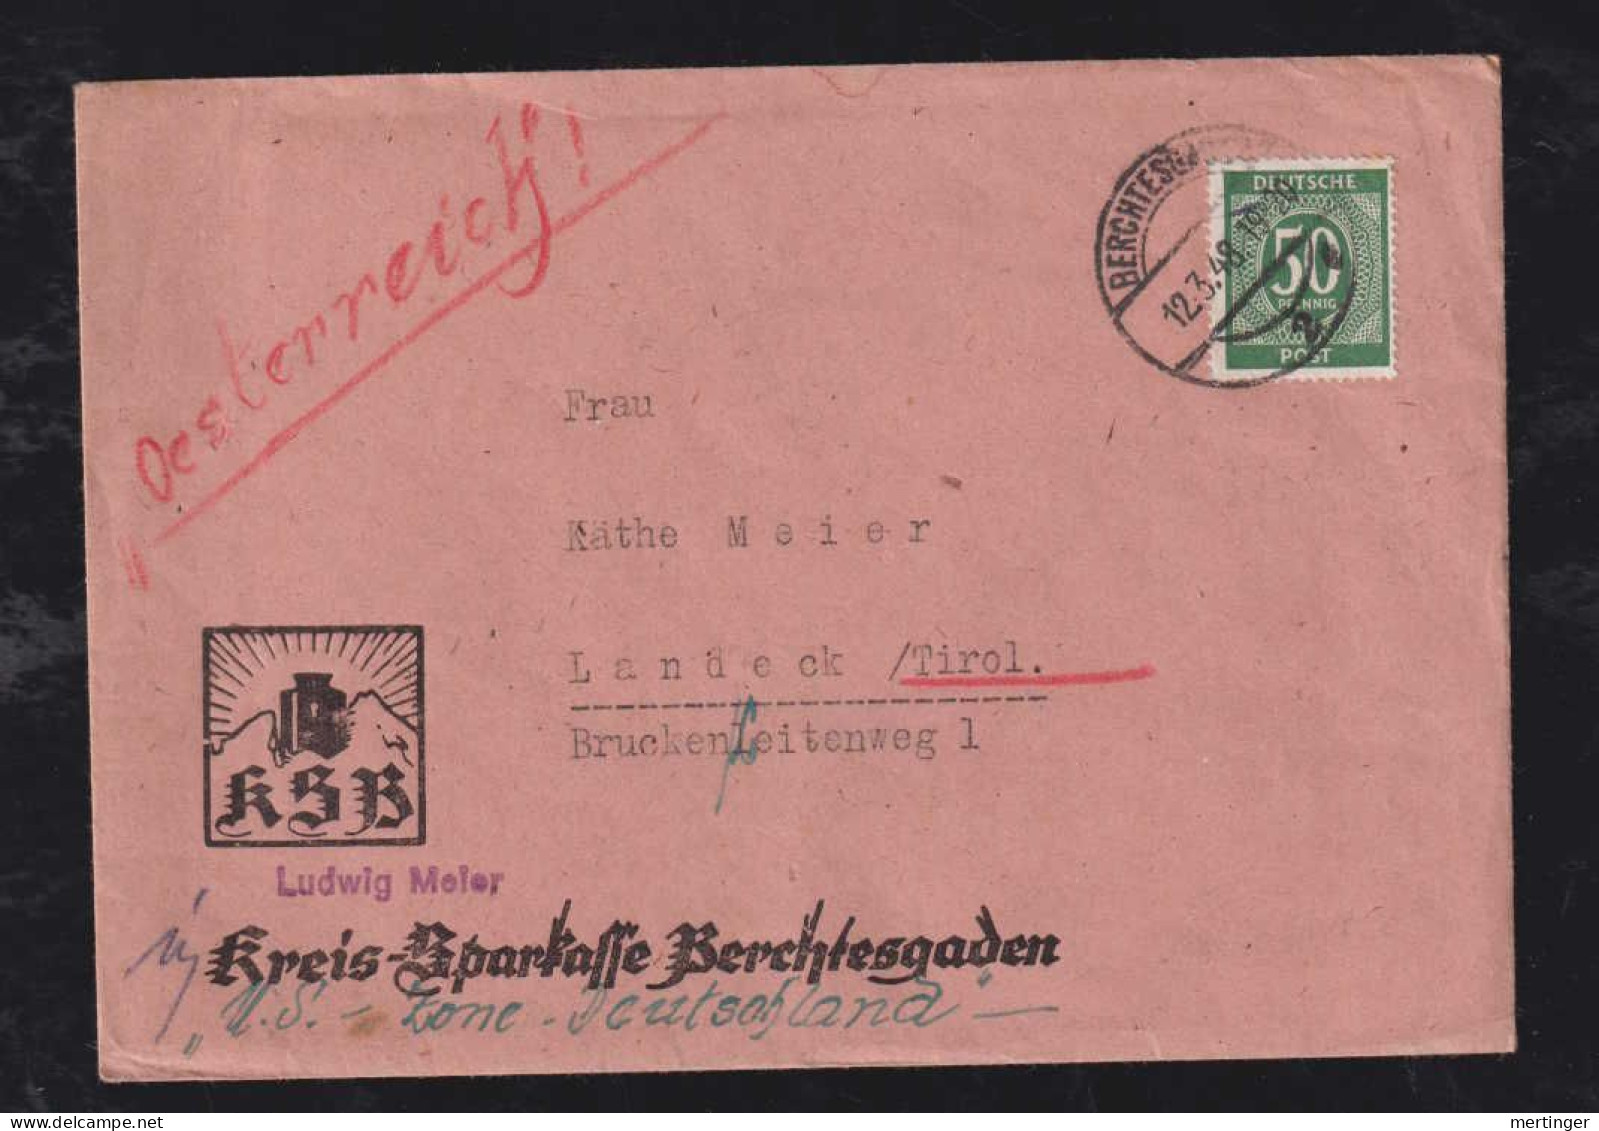 All. Besetzung 1948 50Pf EF Brief BERCHTESGADEN X LANDECK TIROL Österreich Sparkasse Werbung - Covers & Documents